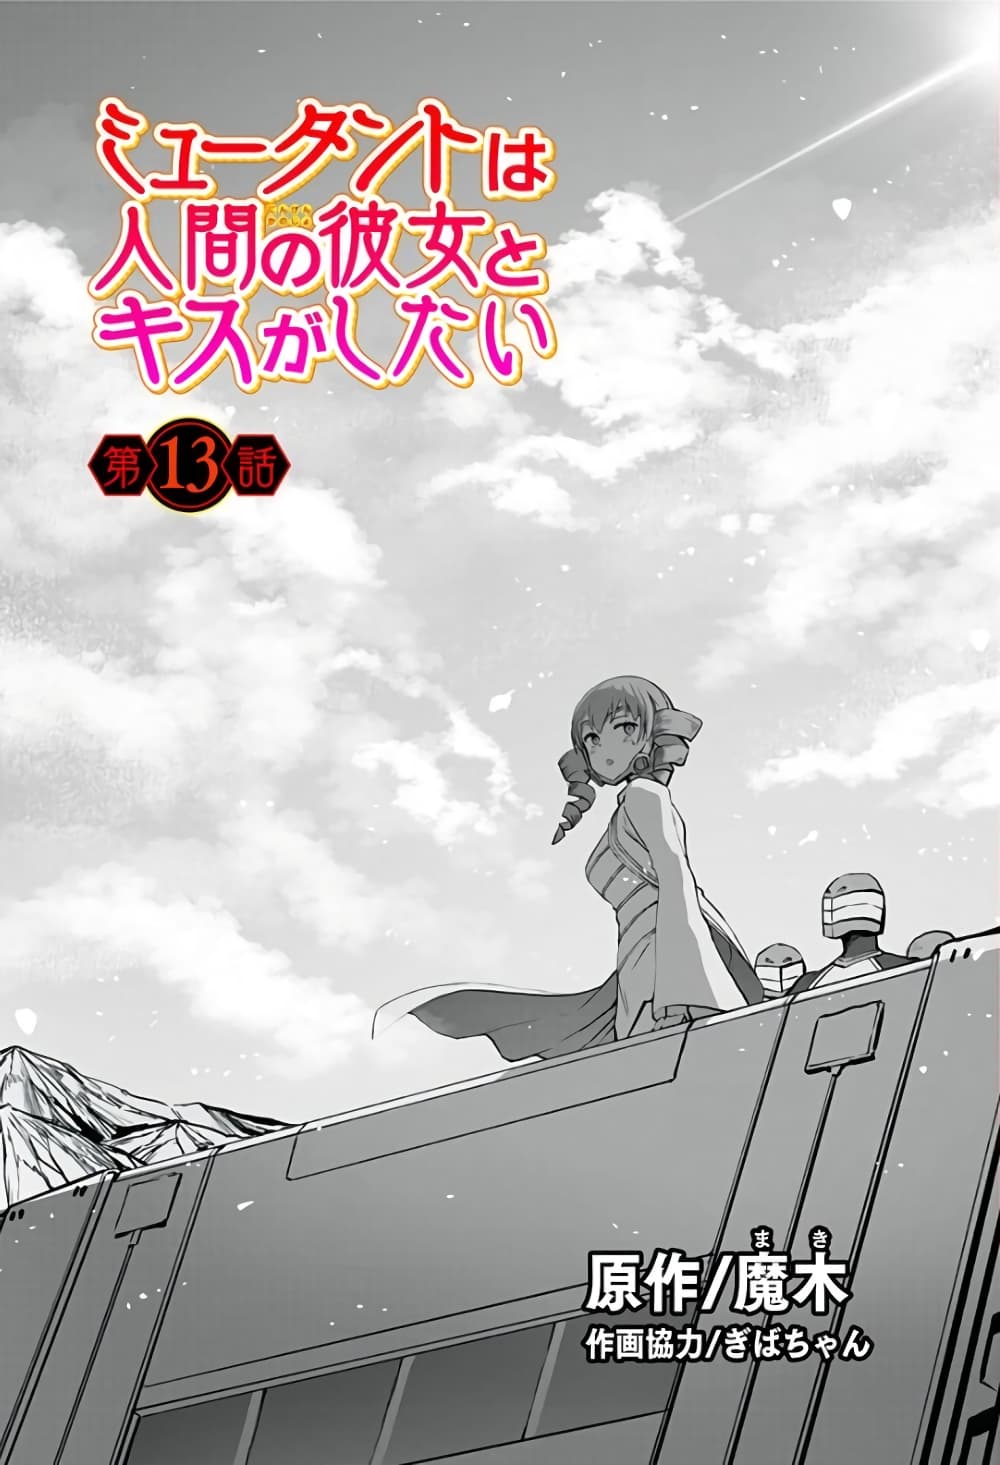 อ่านการ์ตูน Mutant wa ningen no kanojo to kisu ga shitai 13 ภาพที่ 1